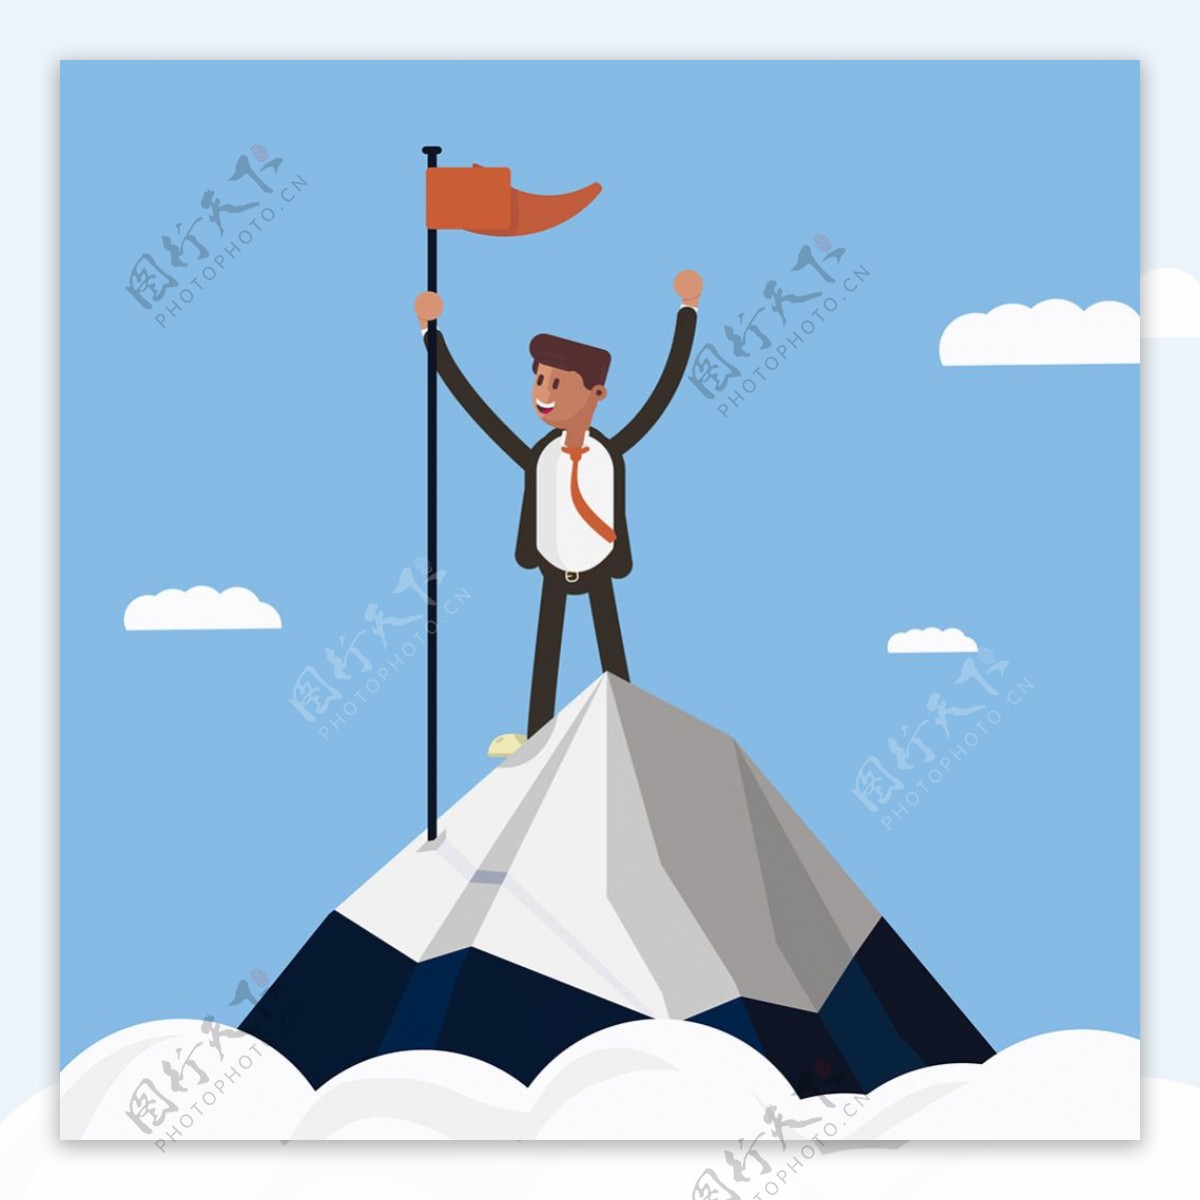 登上山顶插上旗帜的商务人士插图背景